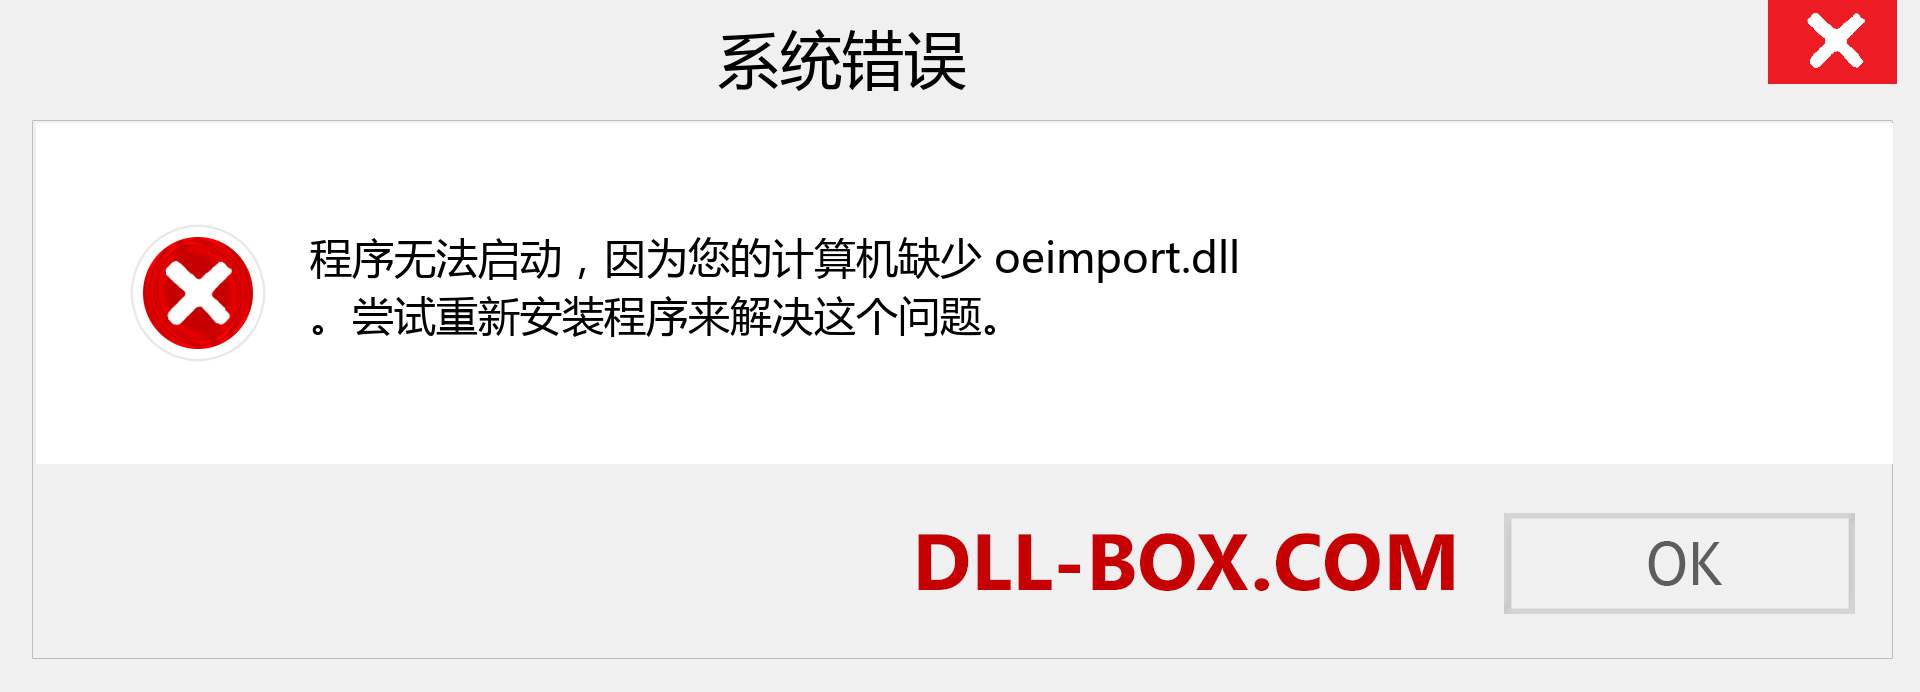 oeimport.dll 文件丢失？。 适用于 Windows 7、8、10 的下载 - 修复 Windows、照片、图像上的 oeimport dll 丢失错误